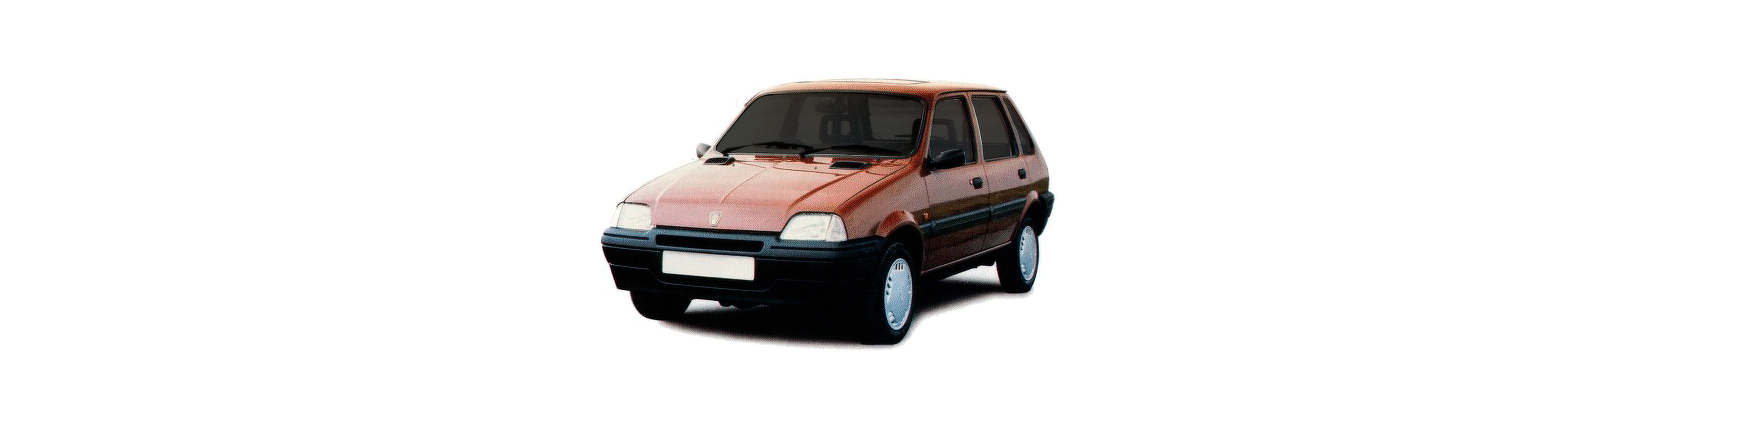 Piezas y Recambios de Rover 100 de 1990 a 1994 | Visite Veramauto.es